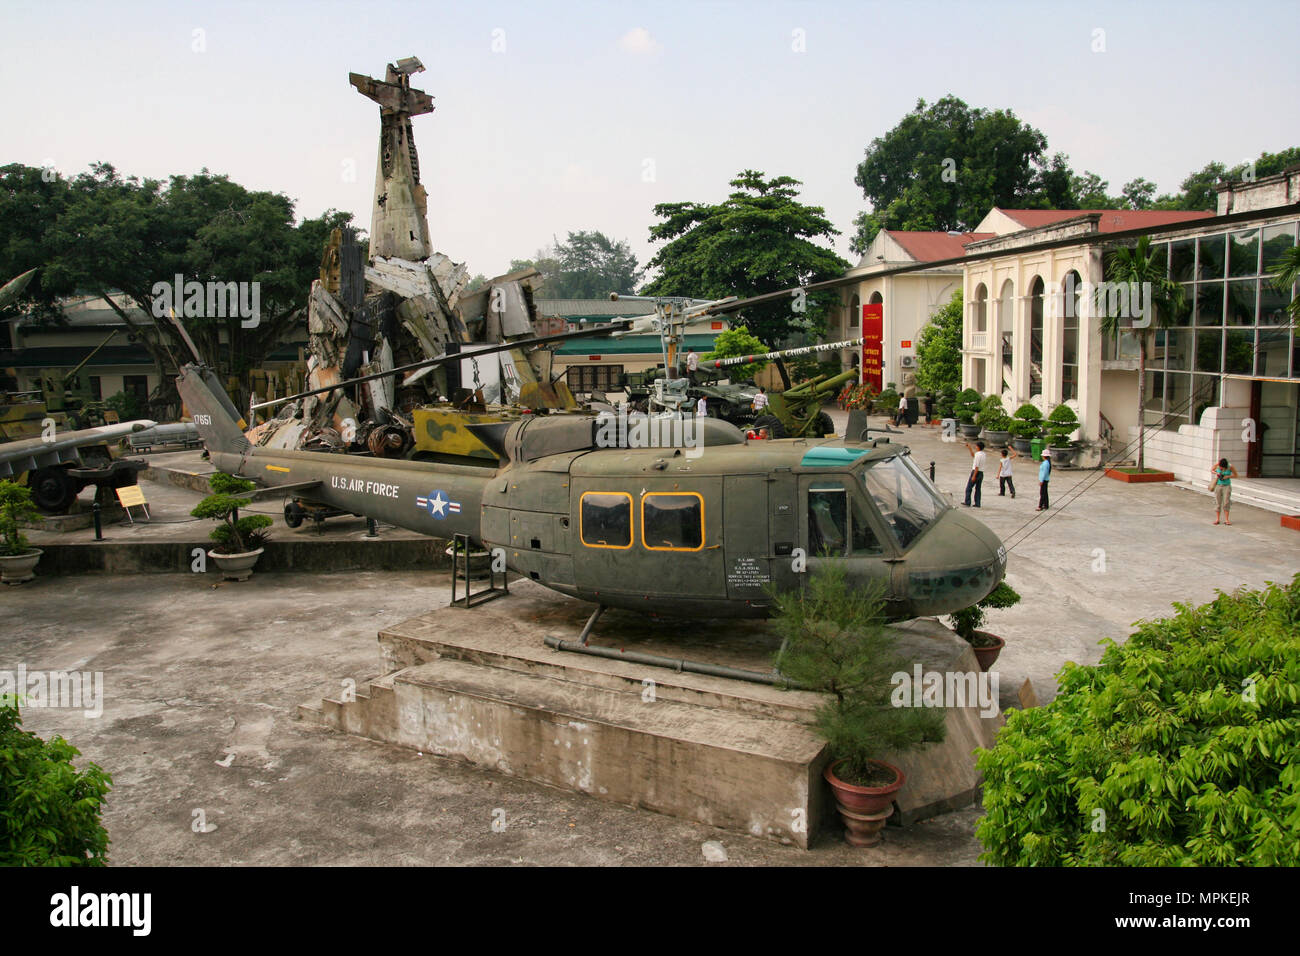 HANOI, VIETNAM - Sep 2, 2009: Amerikanische UH-1 Huey Hubschrauber steht in Hanoi War Museum, dahinter ein Haufen von amerikanischen Flugzeugen nach unten gedreht. Stockfoto